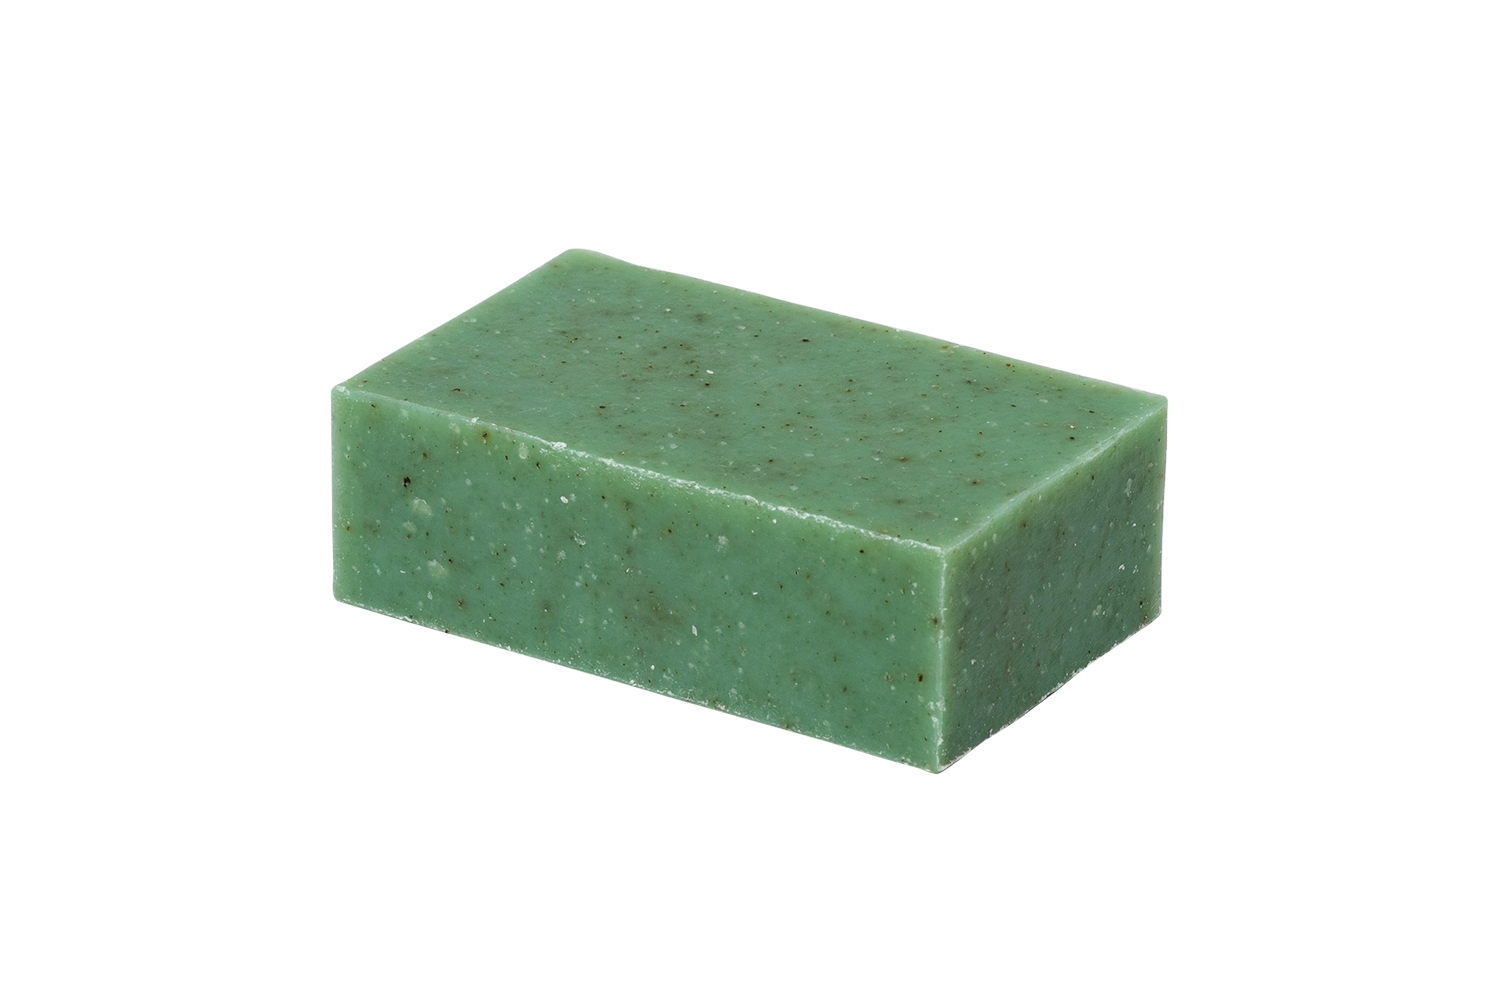 4 oz bar of thyme garden soap